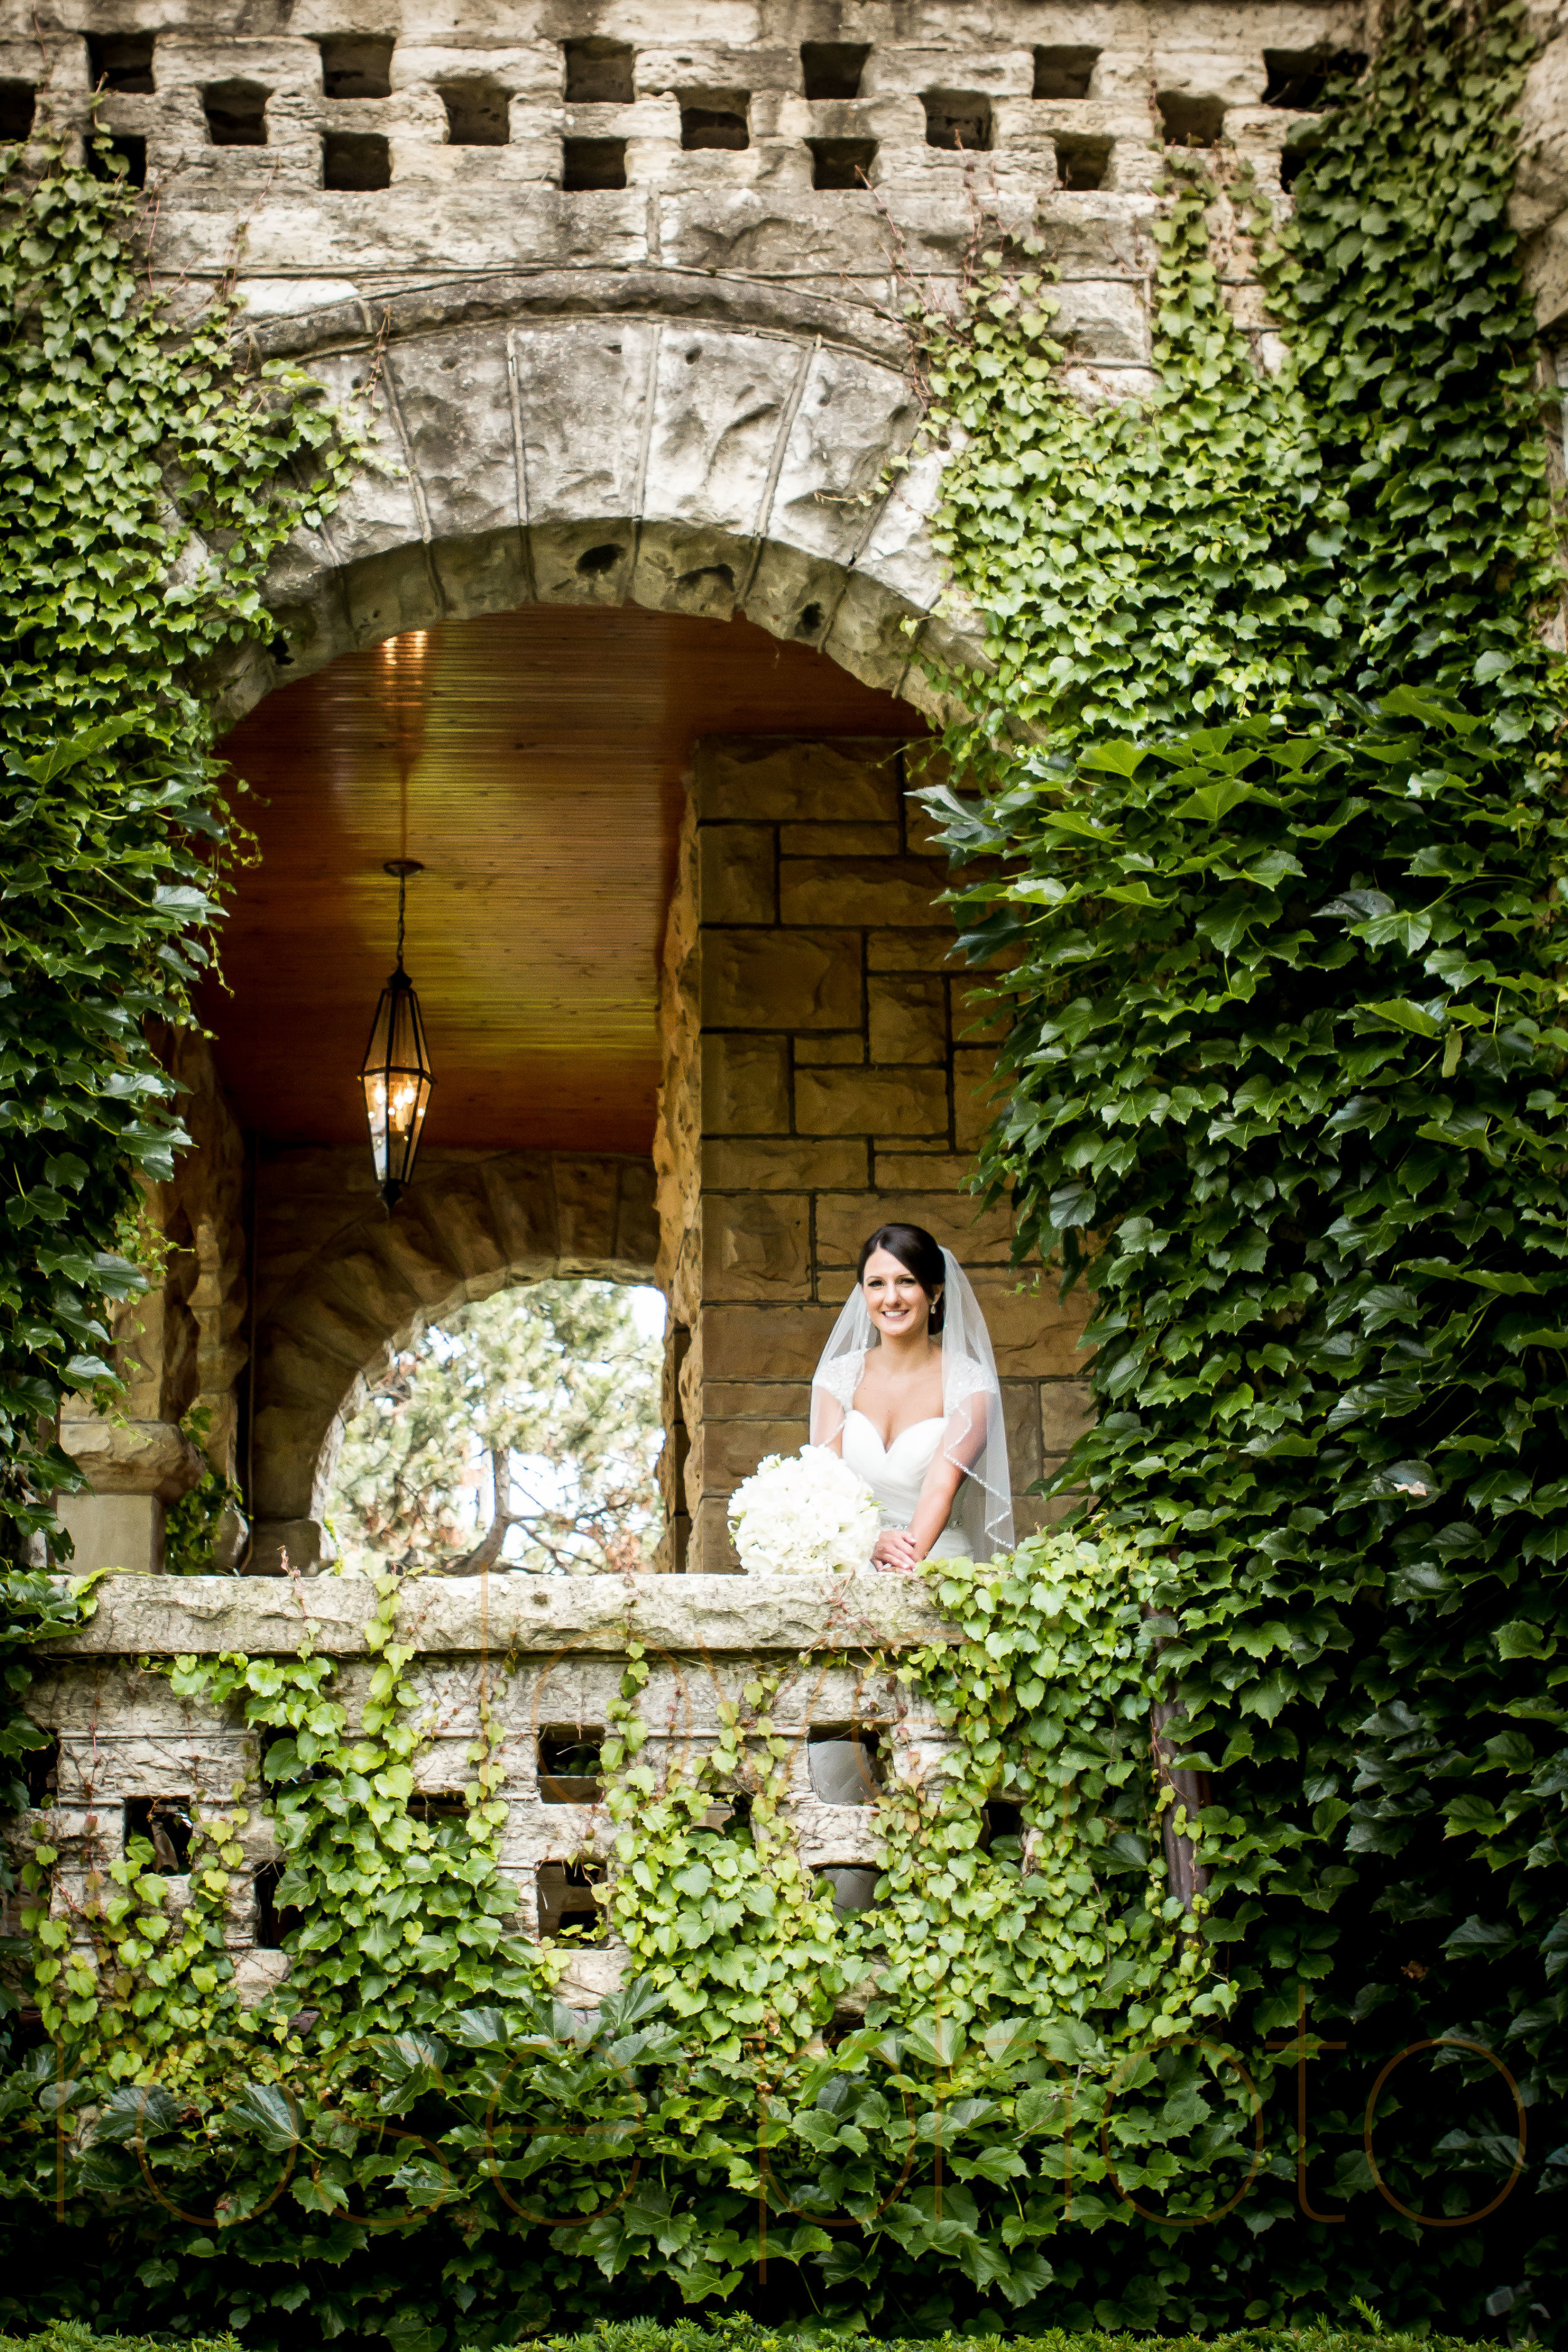 ellen + bryan chicago wedding joliet james healy mansion portrait lifestyle photojournalist photographer -005.jpg